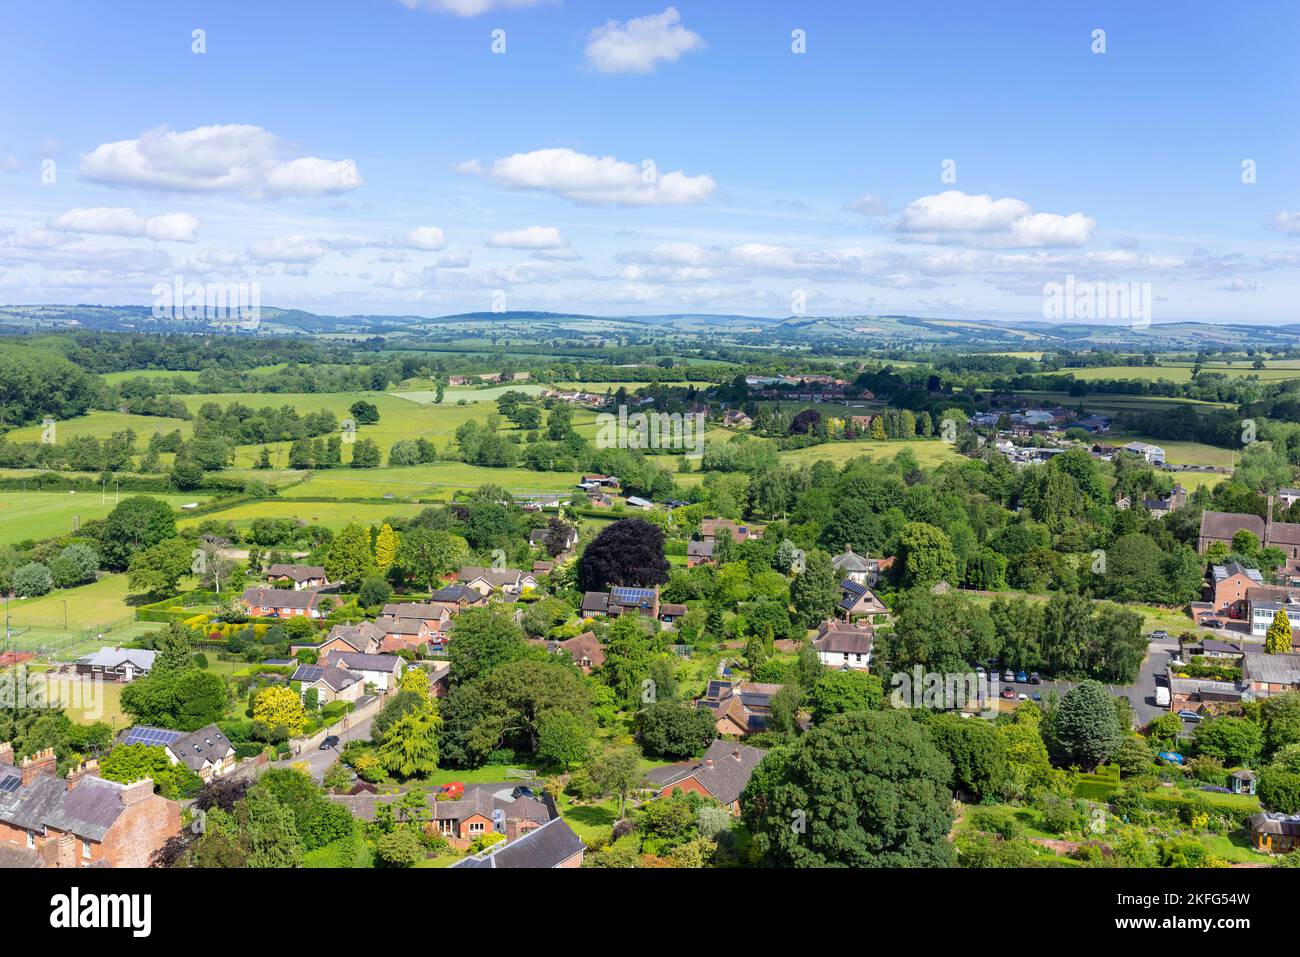 Ludlow Shropshire vue aérienne marché de Shropshire ville de Ludlow Shropshire et campagne environnante de Shropshire Ludlow Shropshire Angleterre GB Banque D'Images